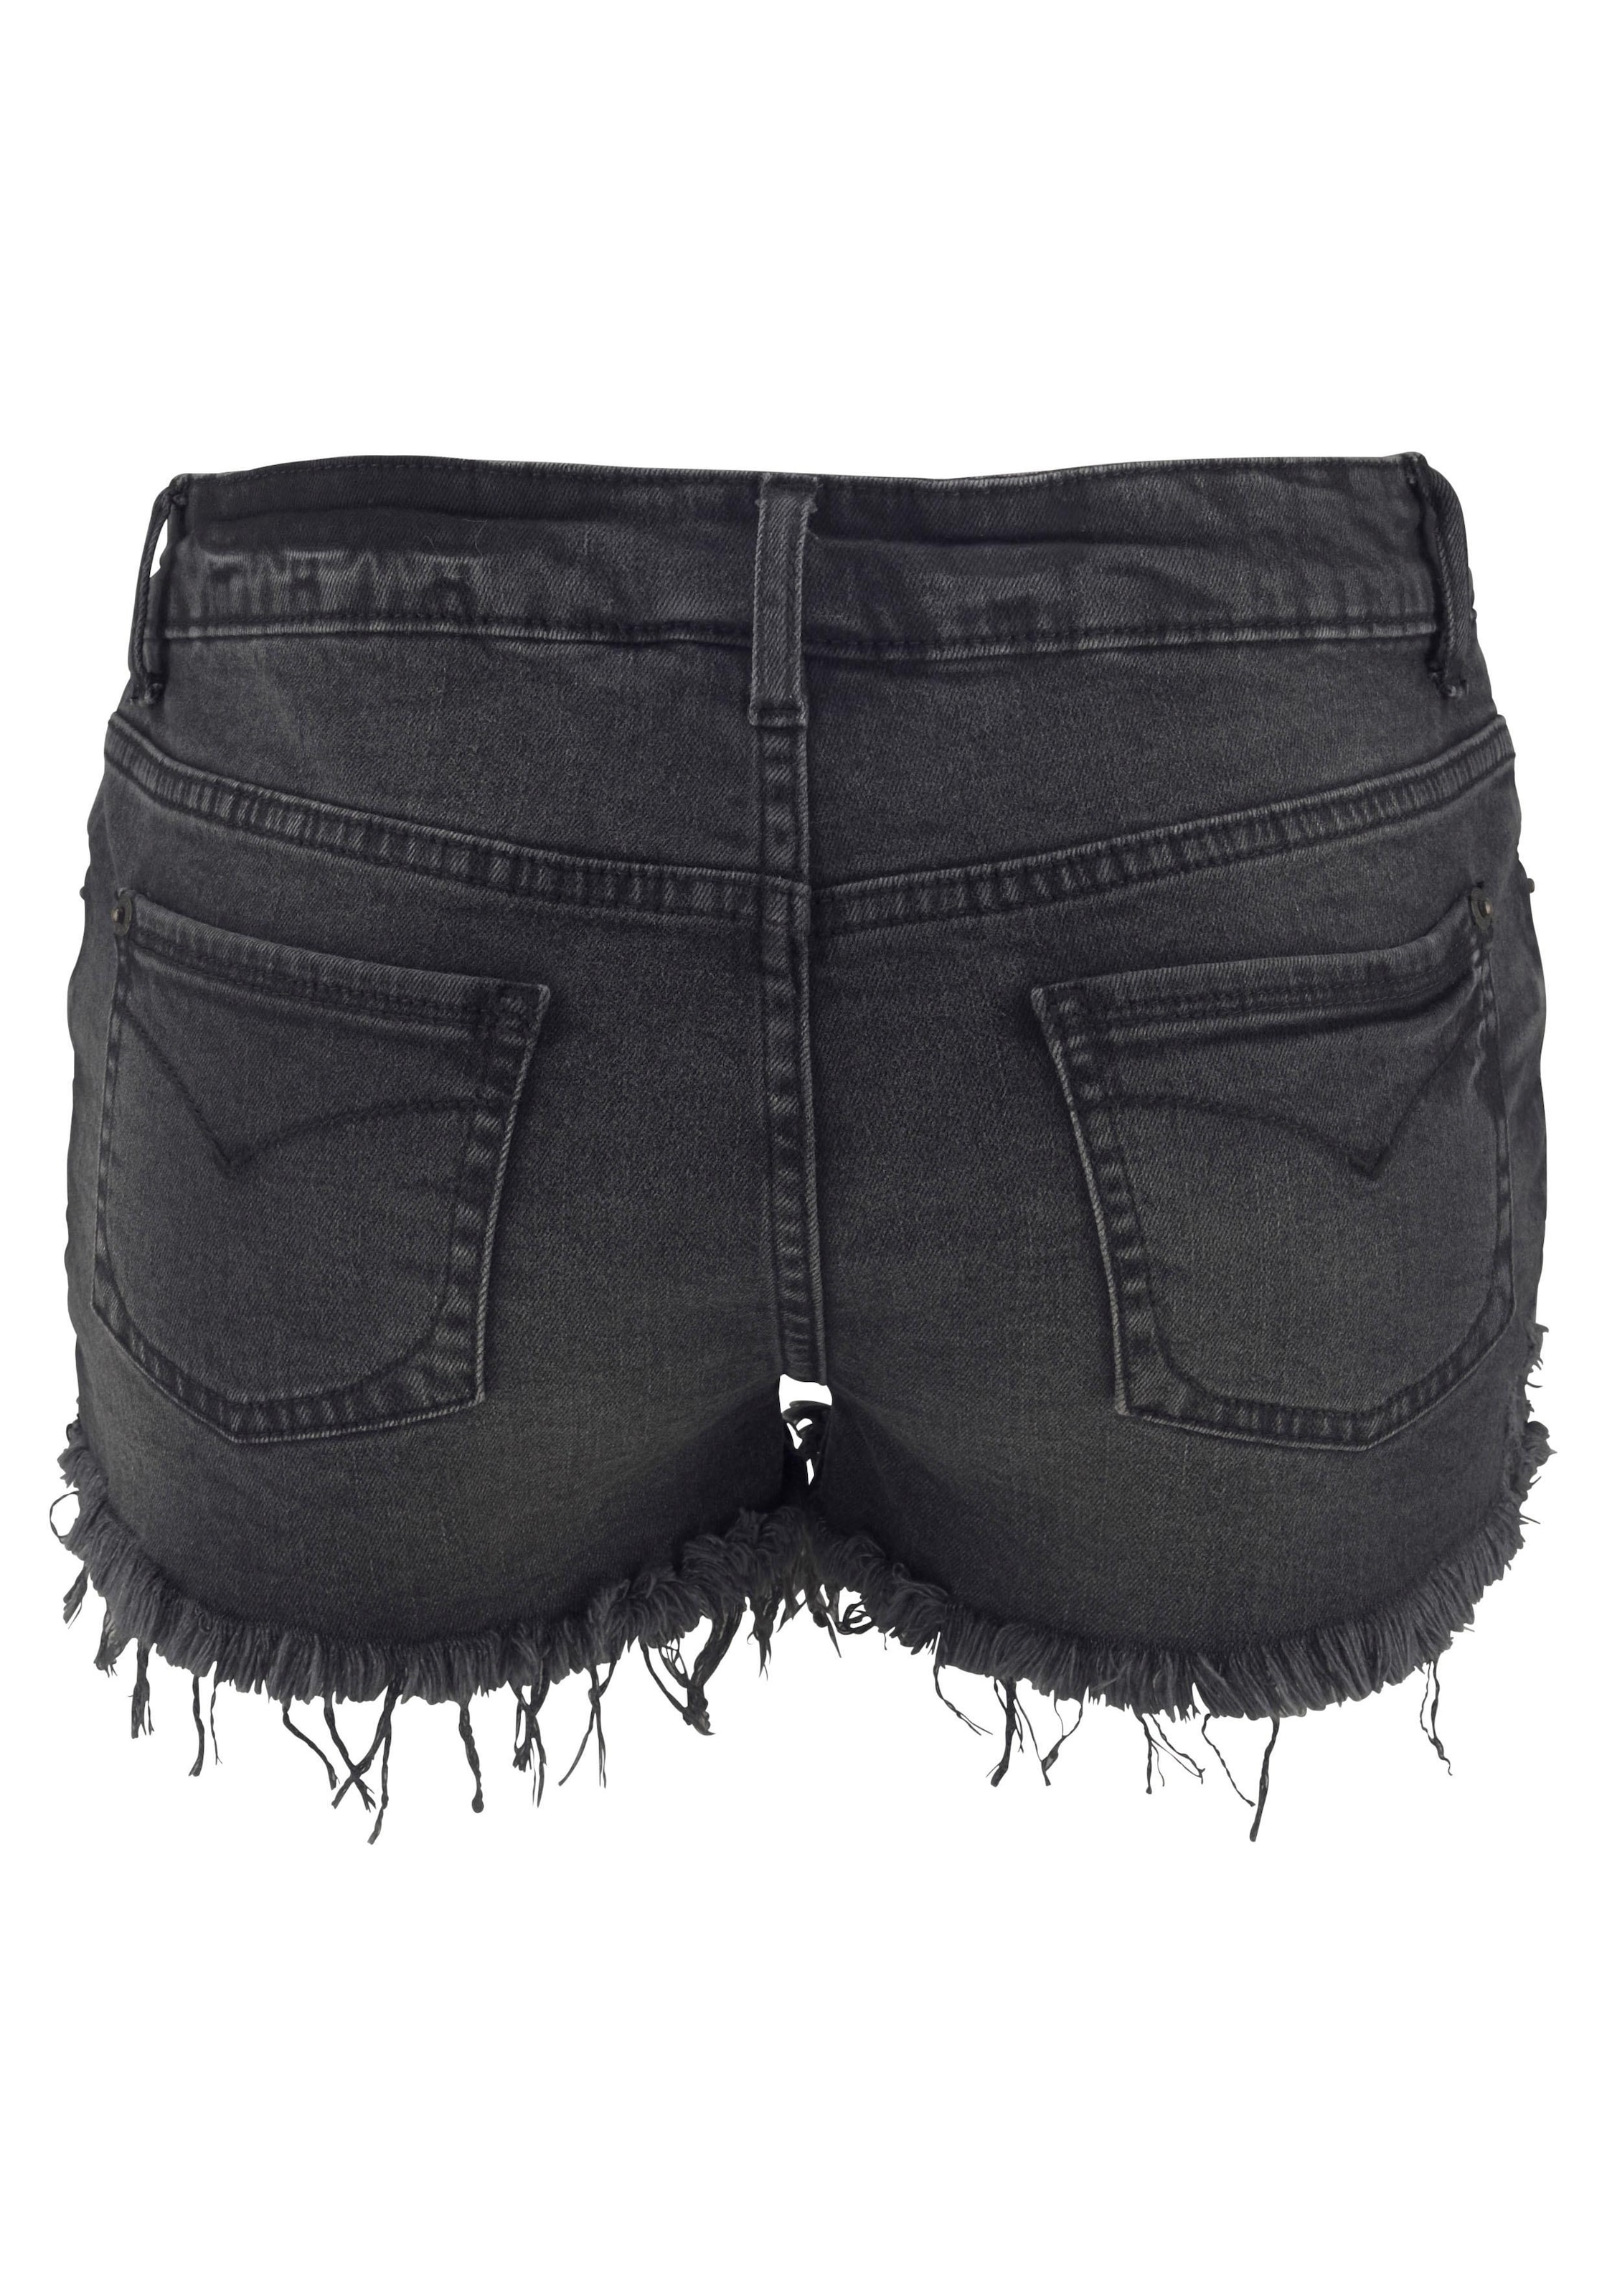 Buffalo Jeanshotpants, mit Fransen am Saum, Shorts aus elastischer Baumwolle